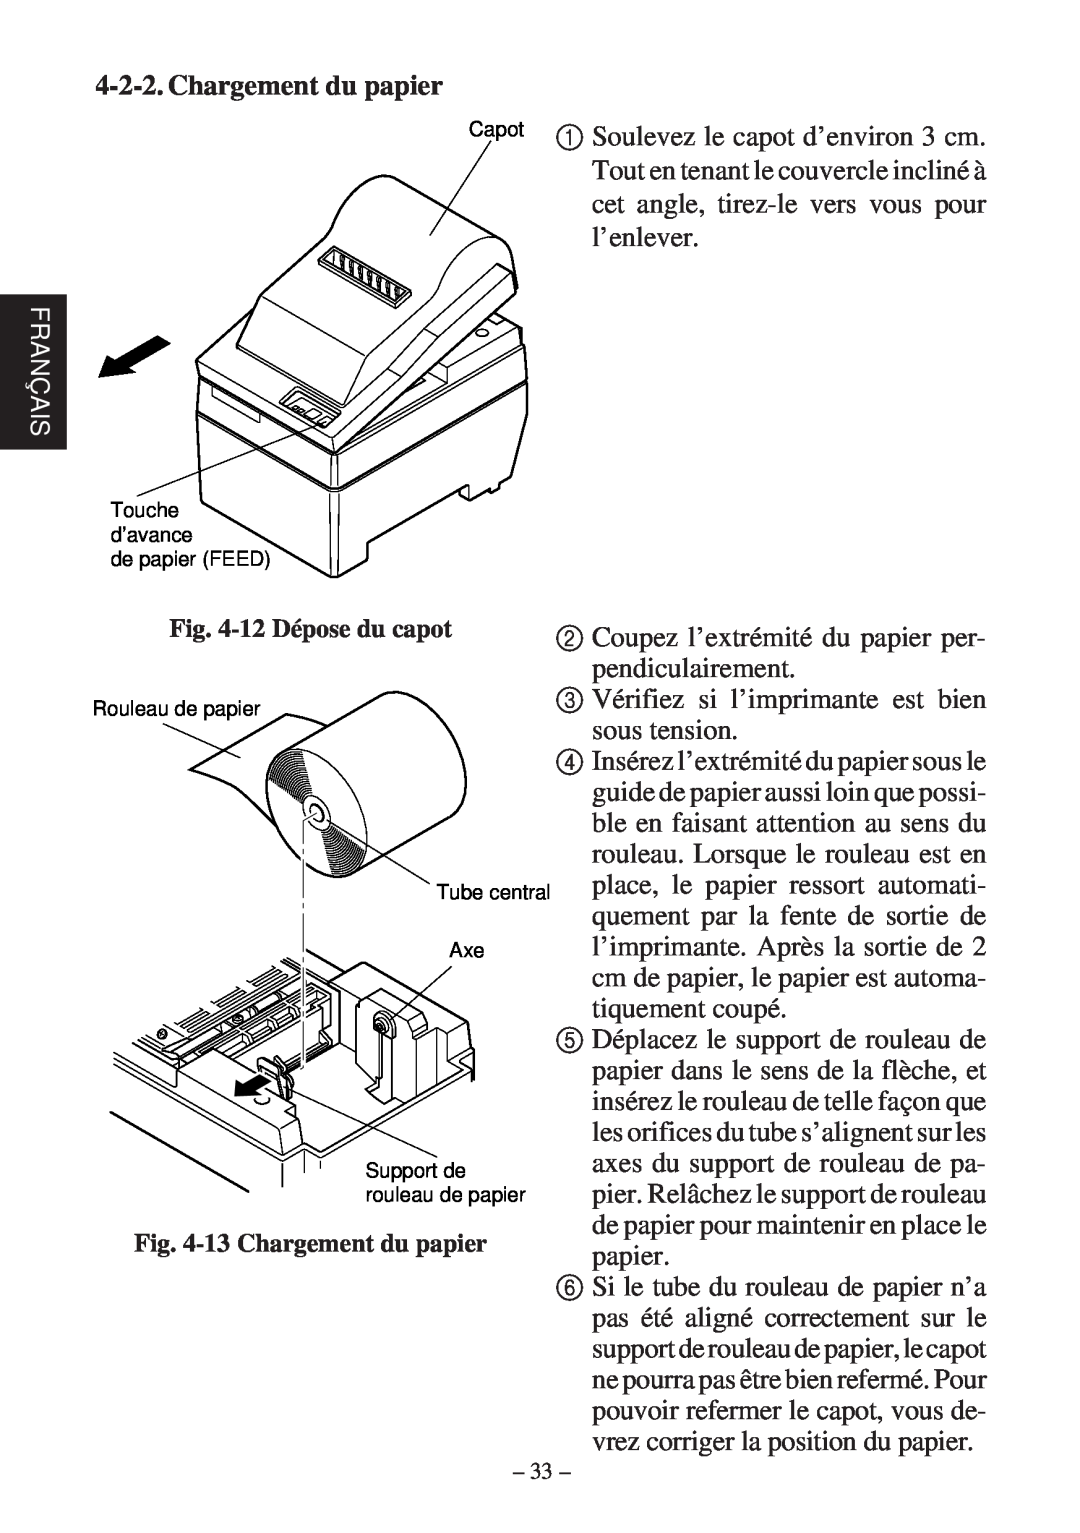 Star Micronics SP200F user manual Français, 12 Dépose du capot, 13 Chargement du papier, de papier FEED 